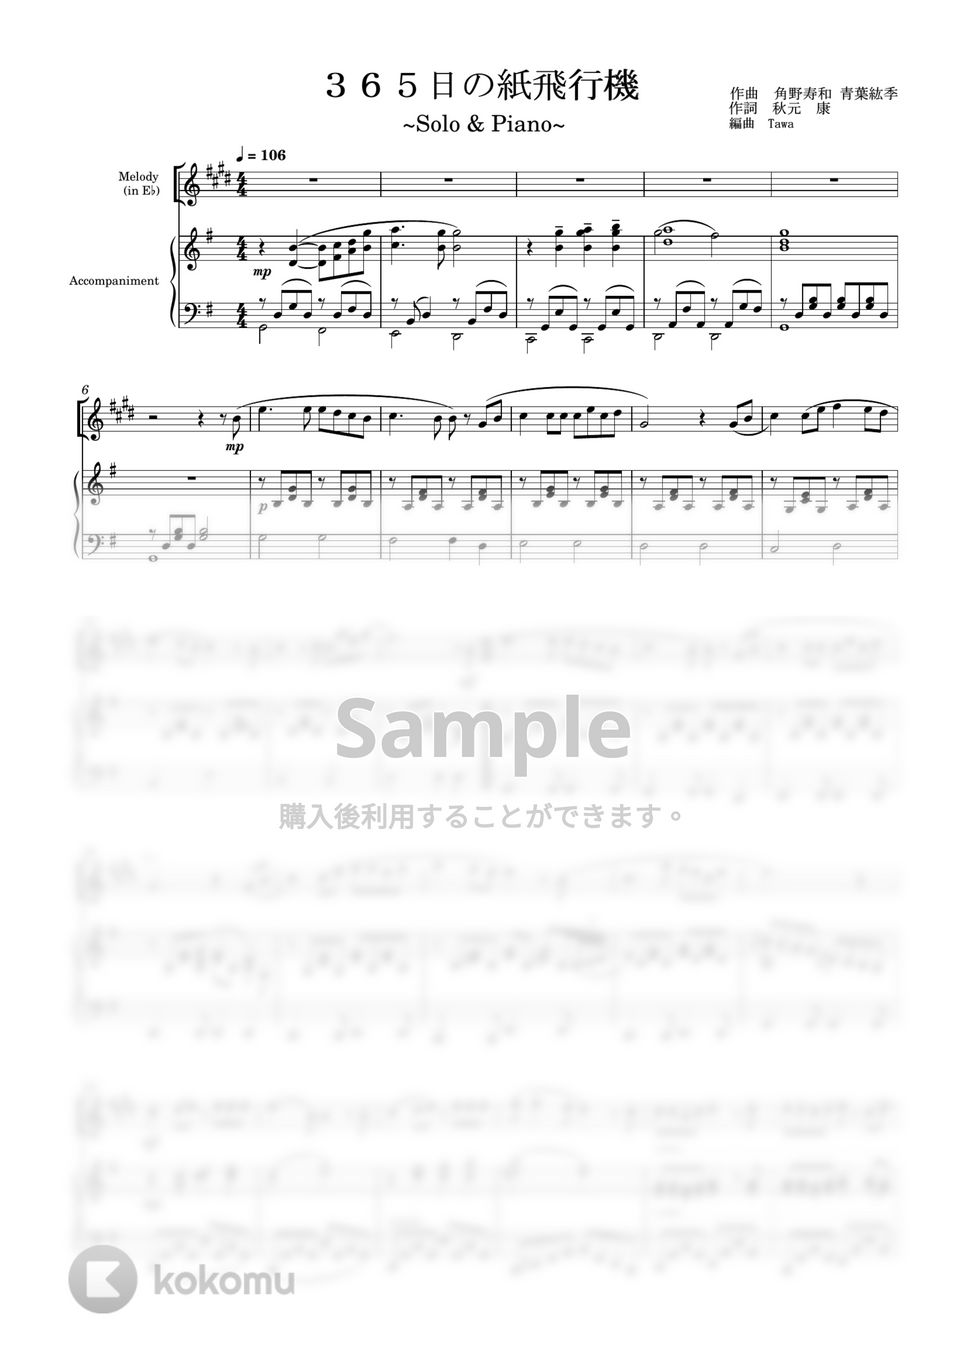 AKB48 - 365日の紙飛行機 (ソロ(in E♭) / ピアノ伴奏) by Tawa